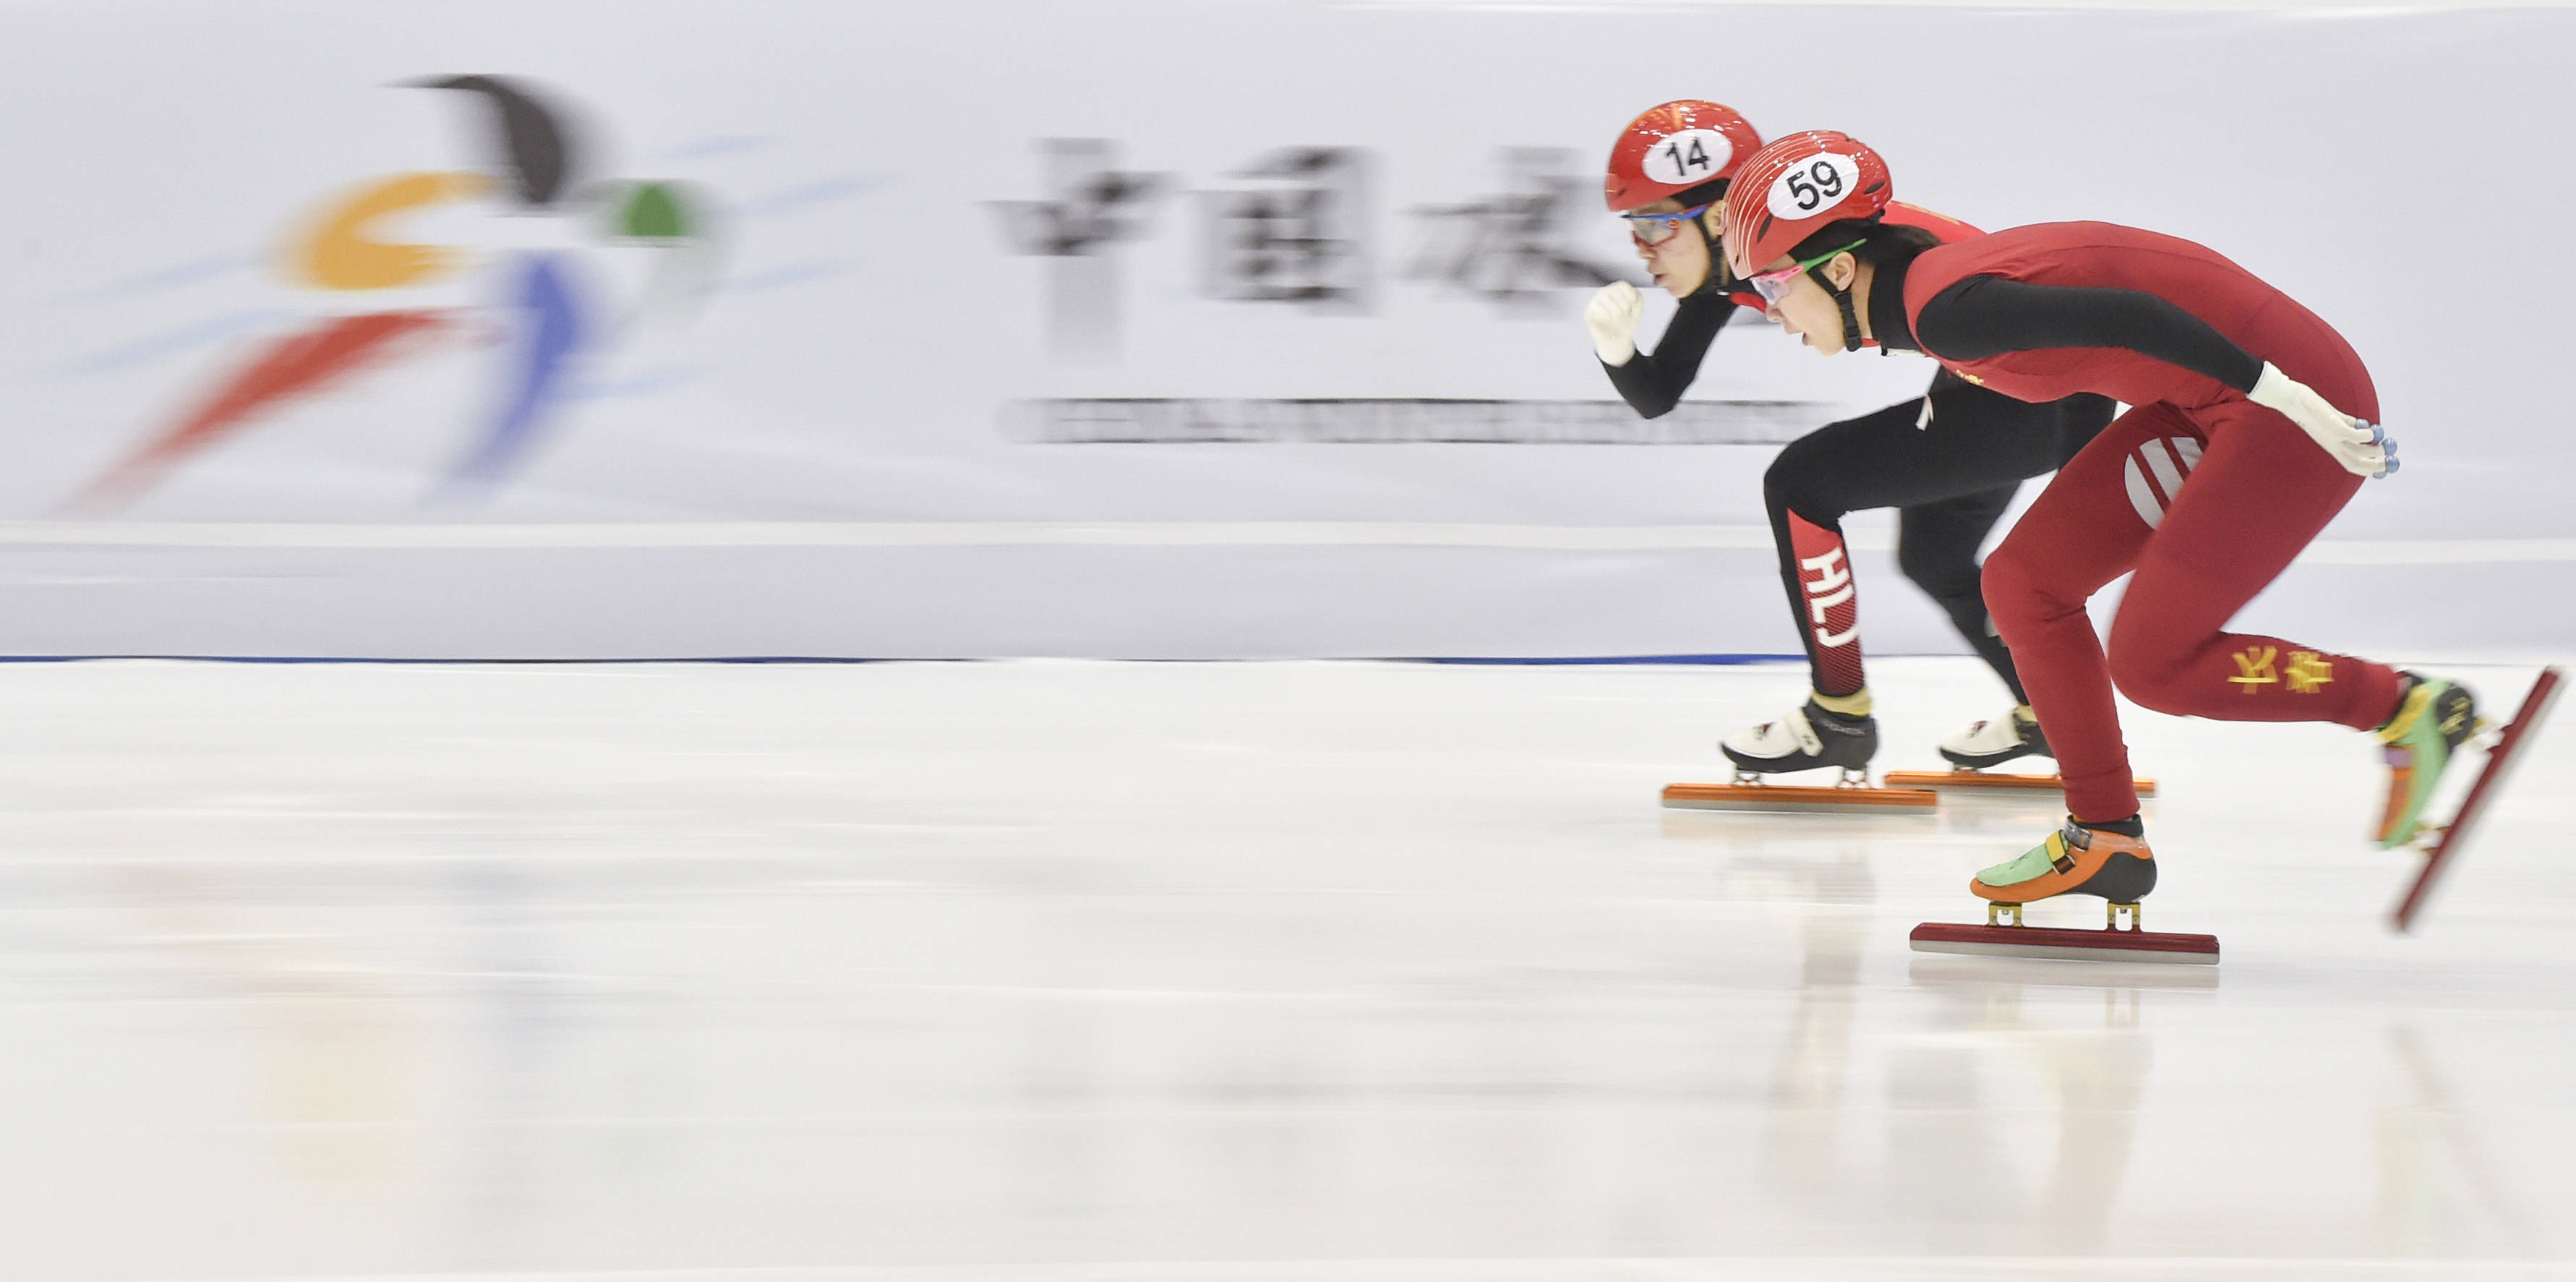 短道速滑——全国冠军赛:范可新获女子500米第六名